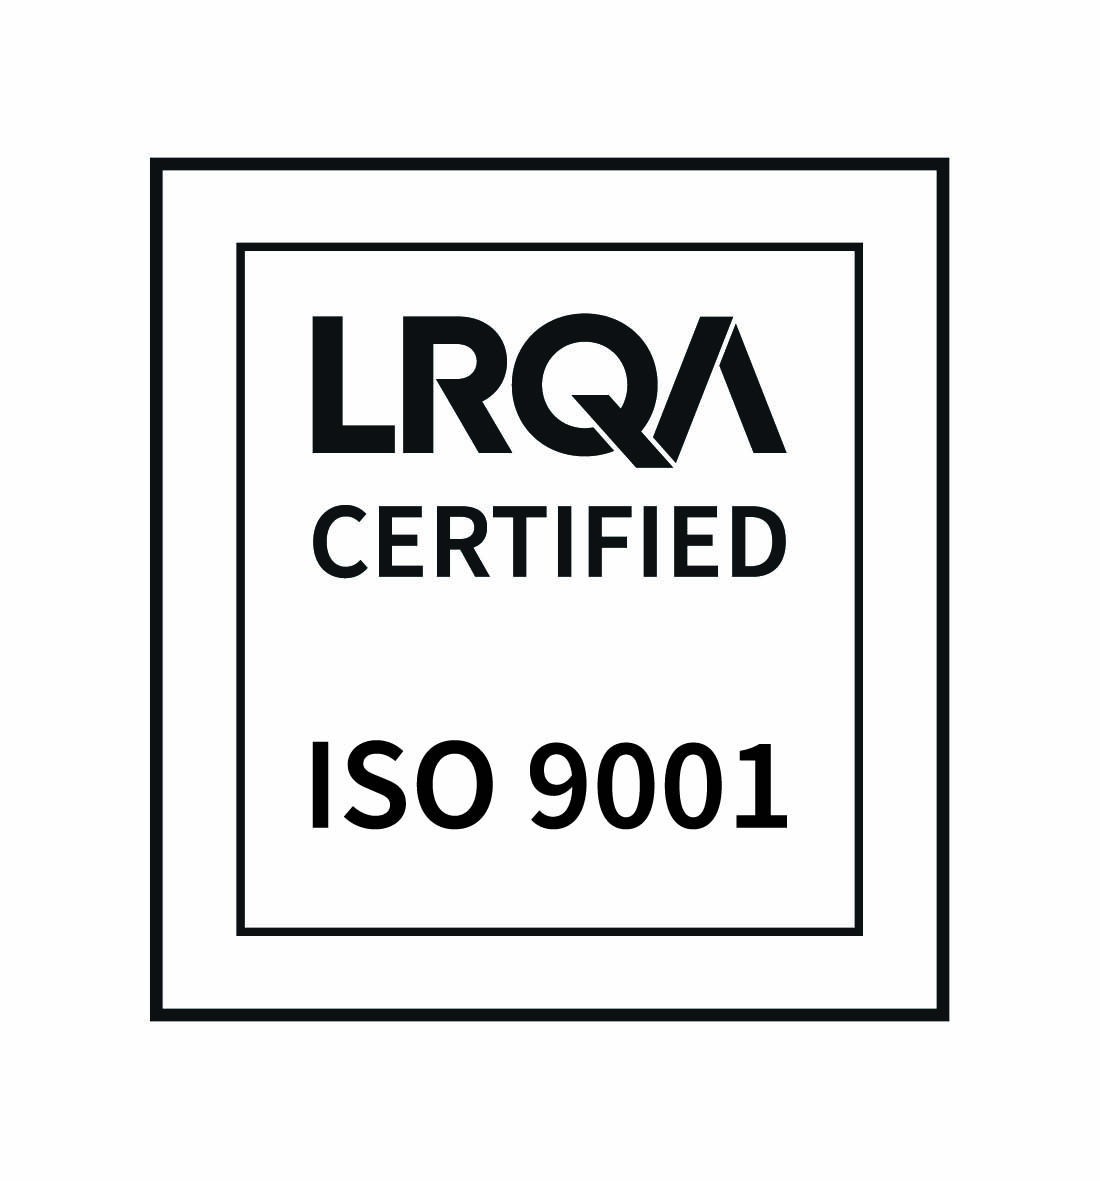 ISO 9001 - CMYK.jpg